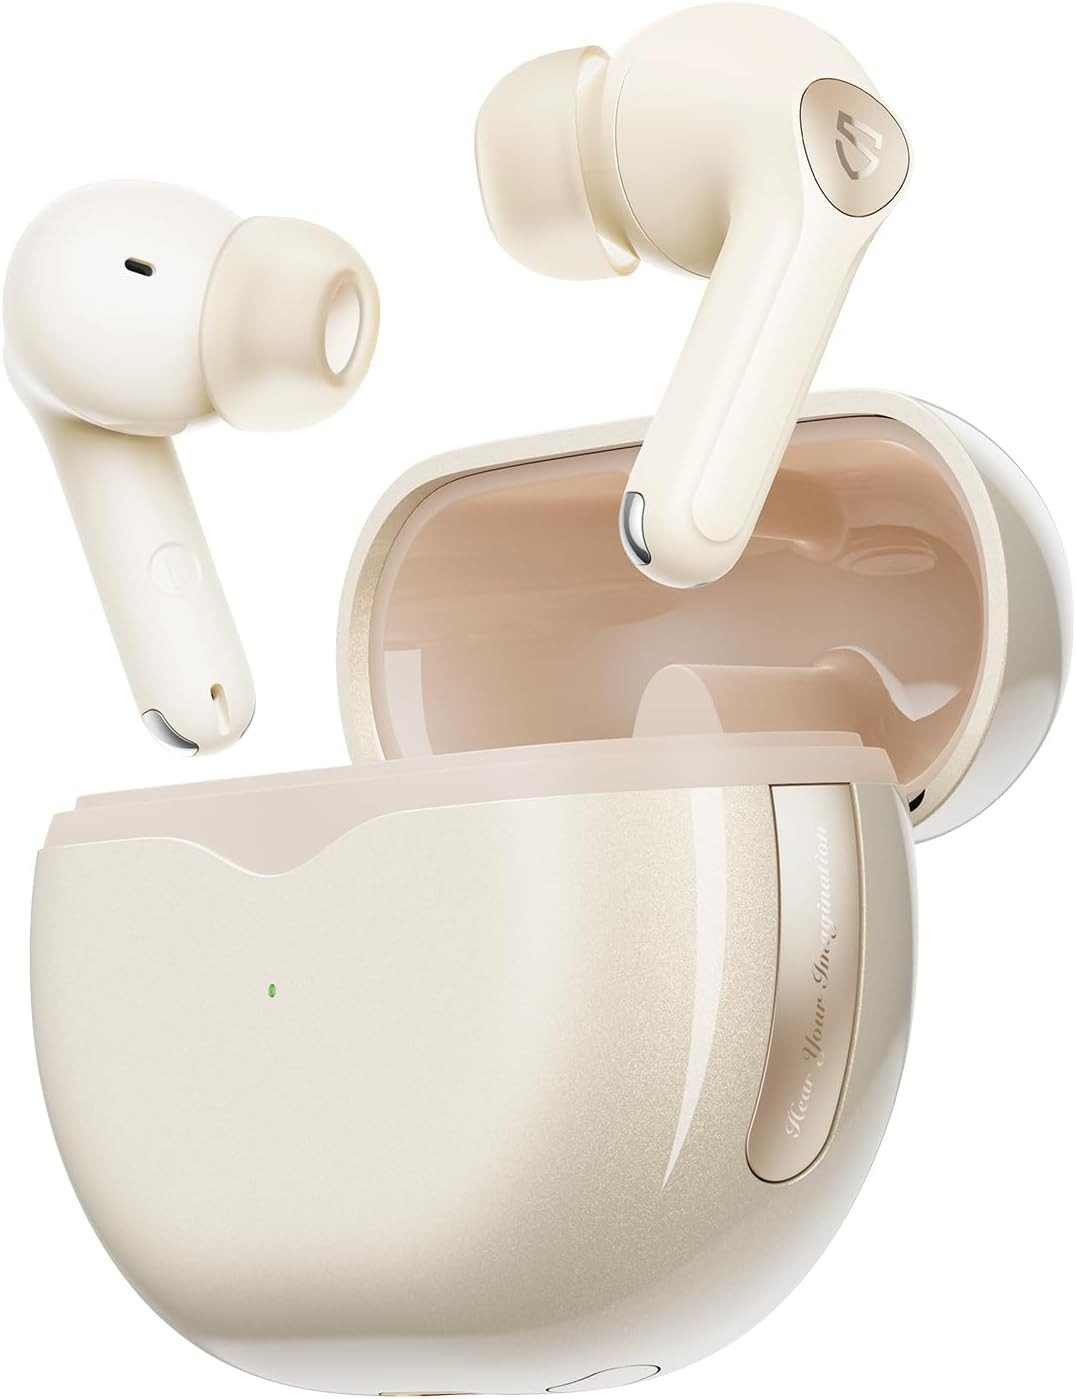 Soundpeats mit 6-Mic und AptX-Voice In-Ear-Kopfhörer (Hybrid Noise Cancelling passt sich an Umgebungsgeräusche an und bietet klare Audioqualität, ideal für unterwegs oder in lauten Umgebungen., für kristallklaren Klang und dynamische Lautsprecher)